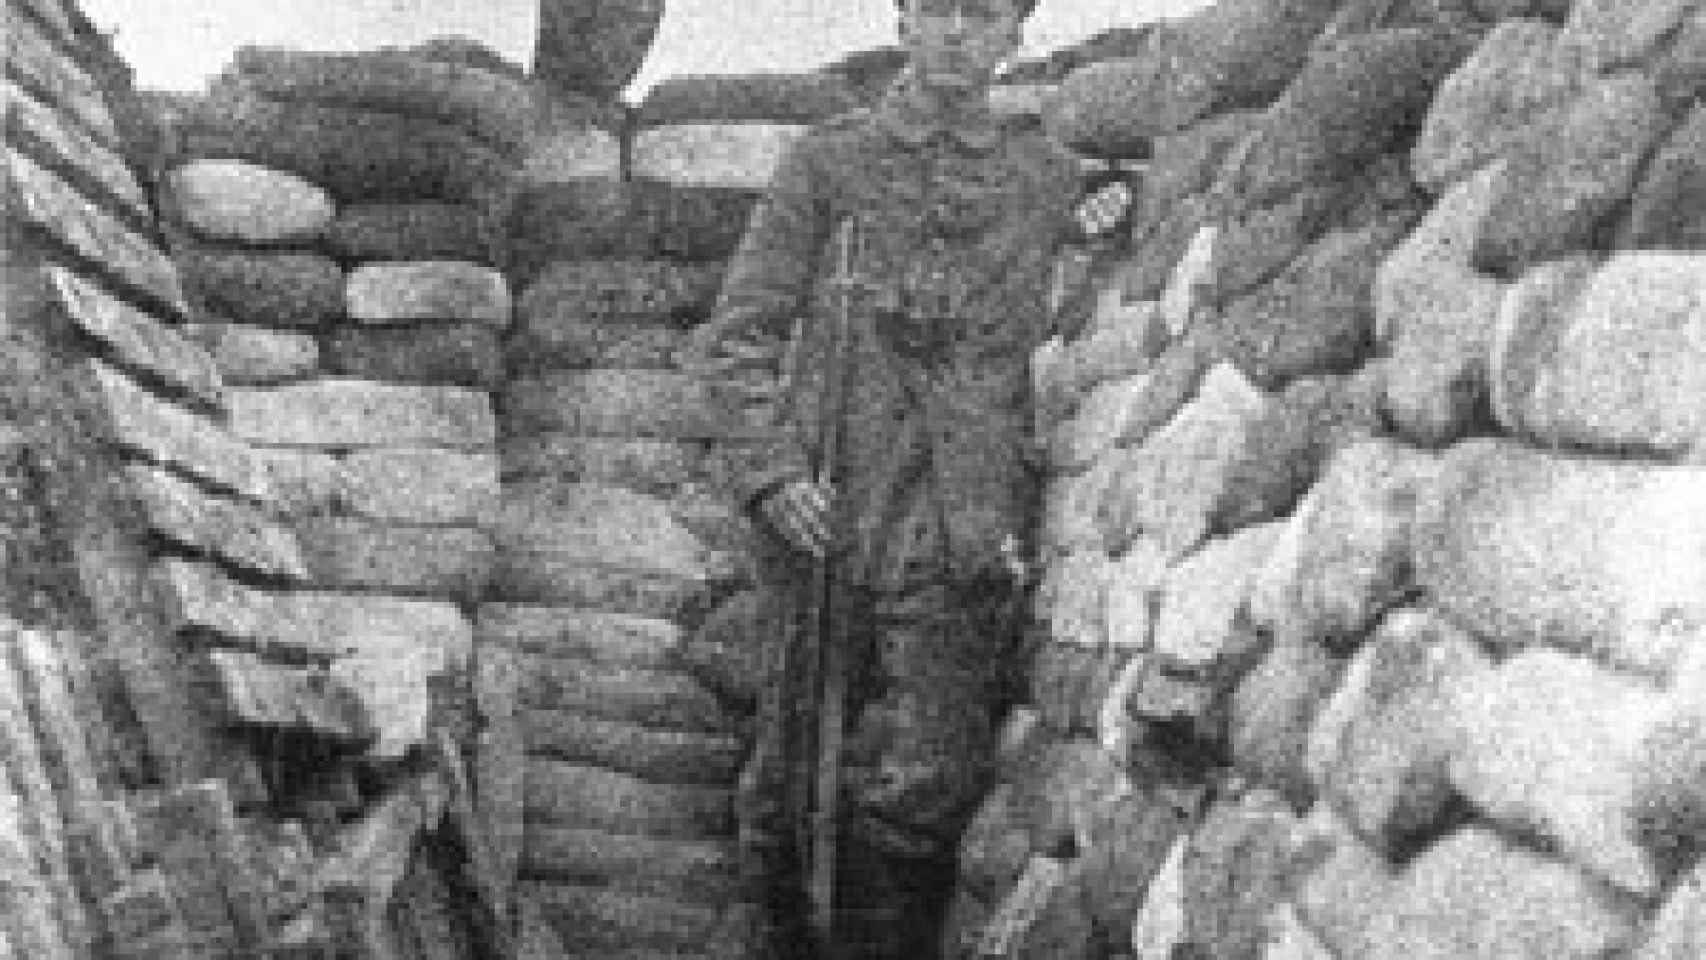 Image: Diario de guerra. 1914-1918